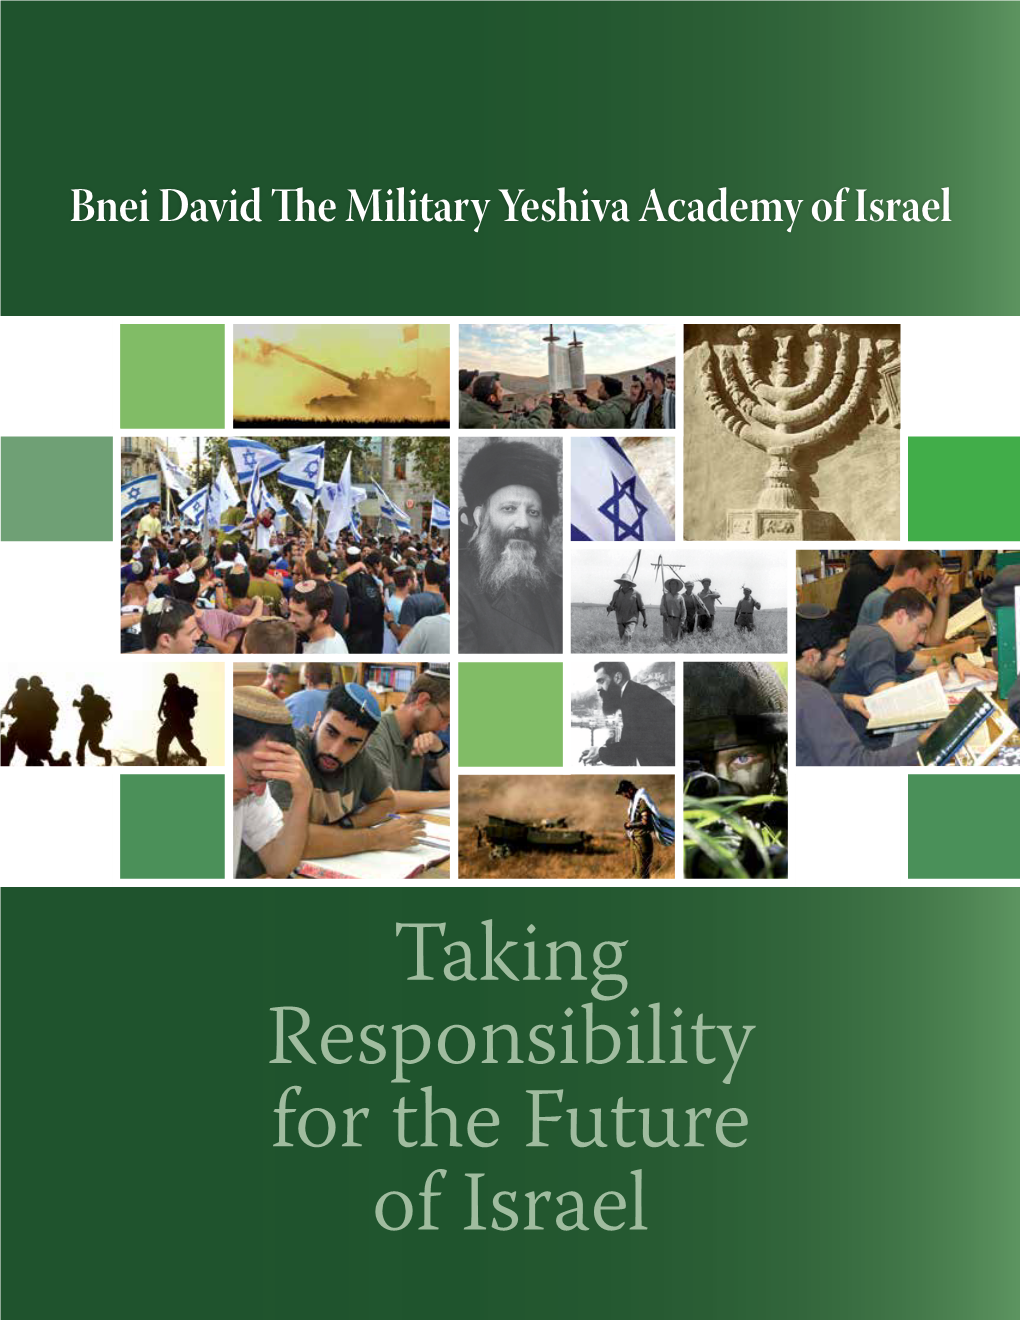 Bnei David the Military Yeshiva Academy of Israel